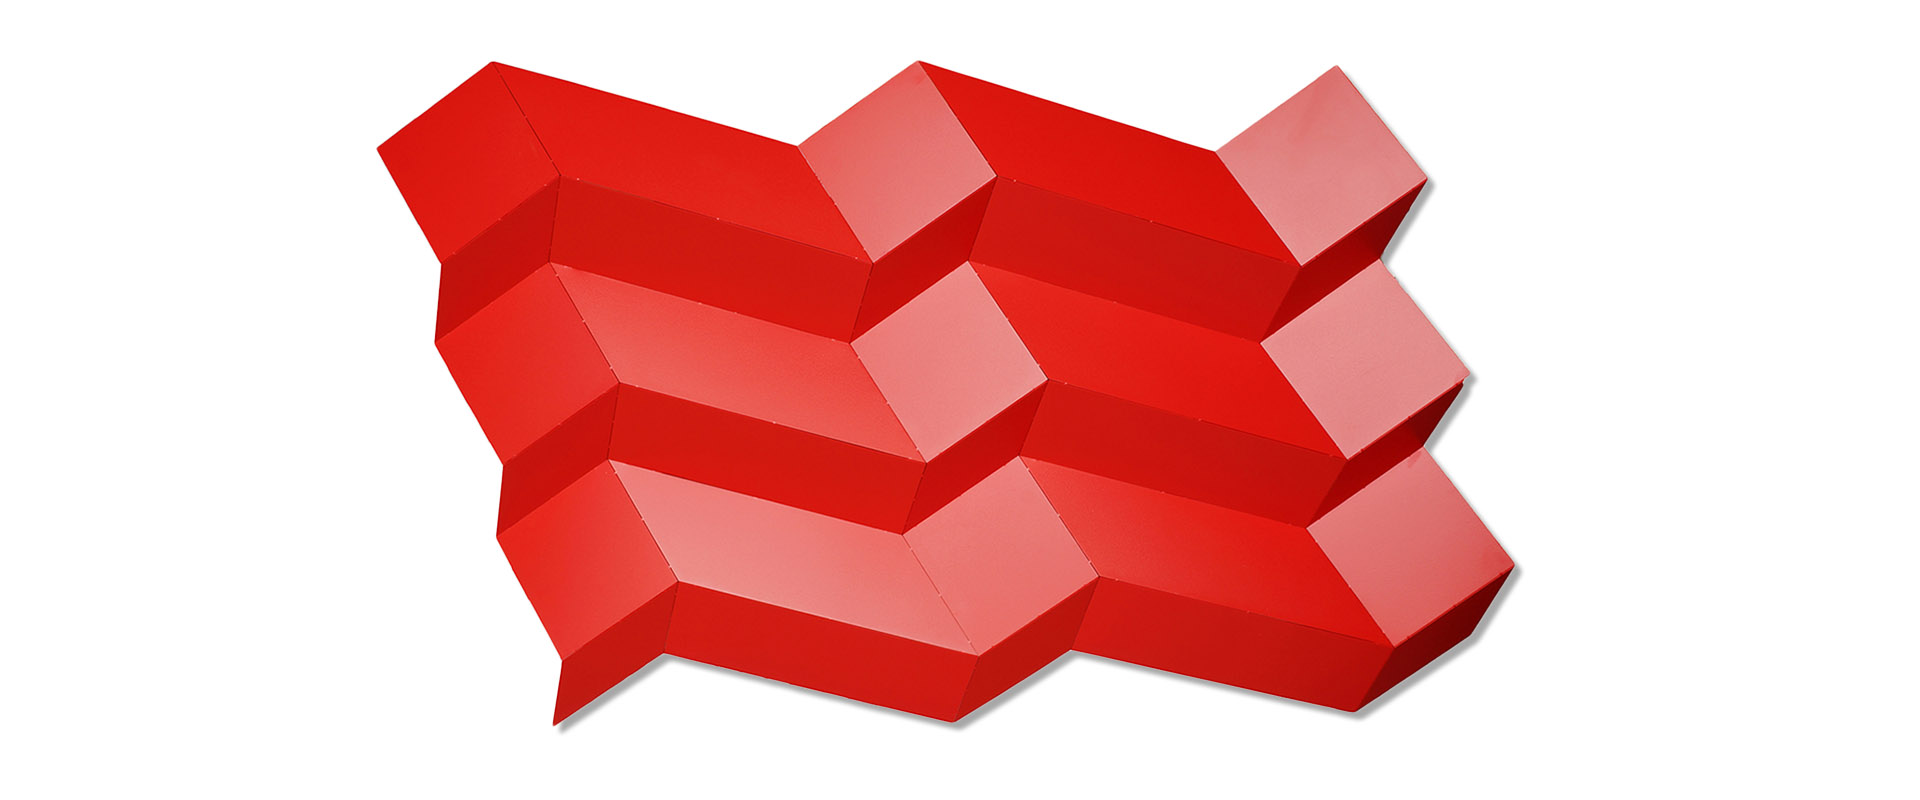 "9 Quadrate verbunden" - 2020, Edelstahl pulverbeschichtet rot gefaltet, 120 x 200 x 15 cm